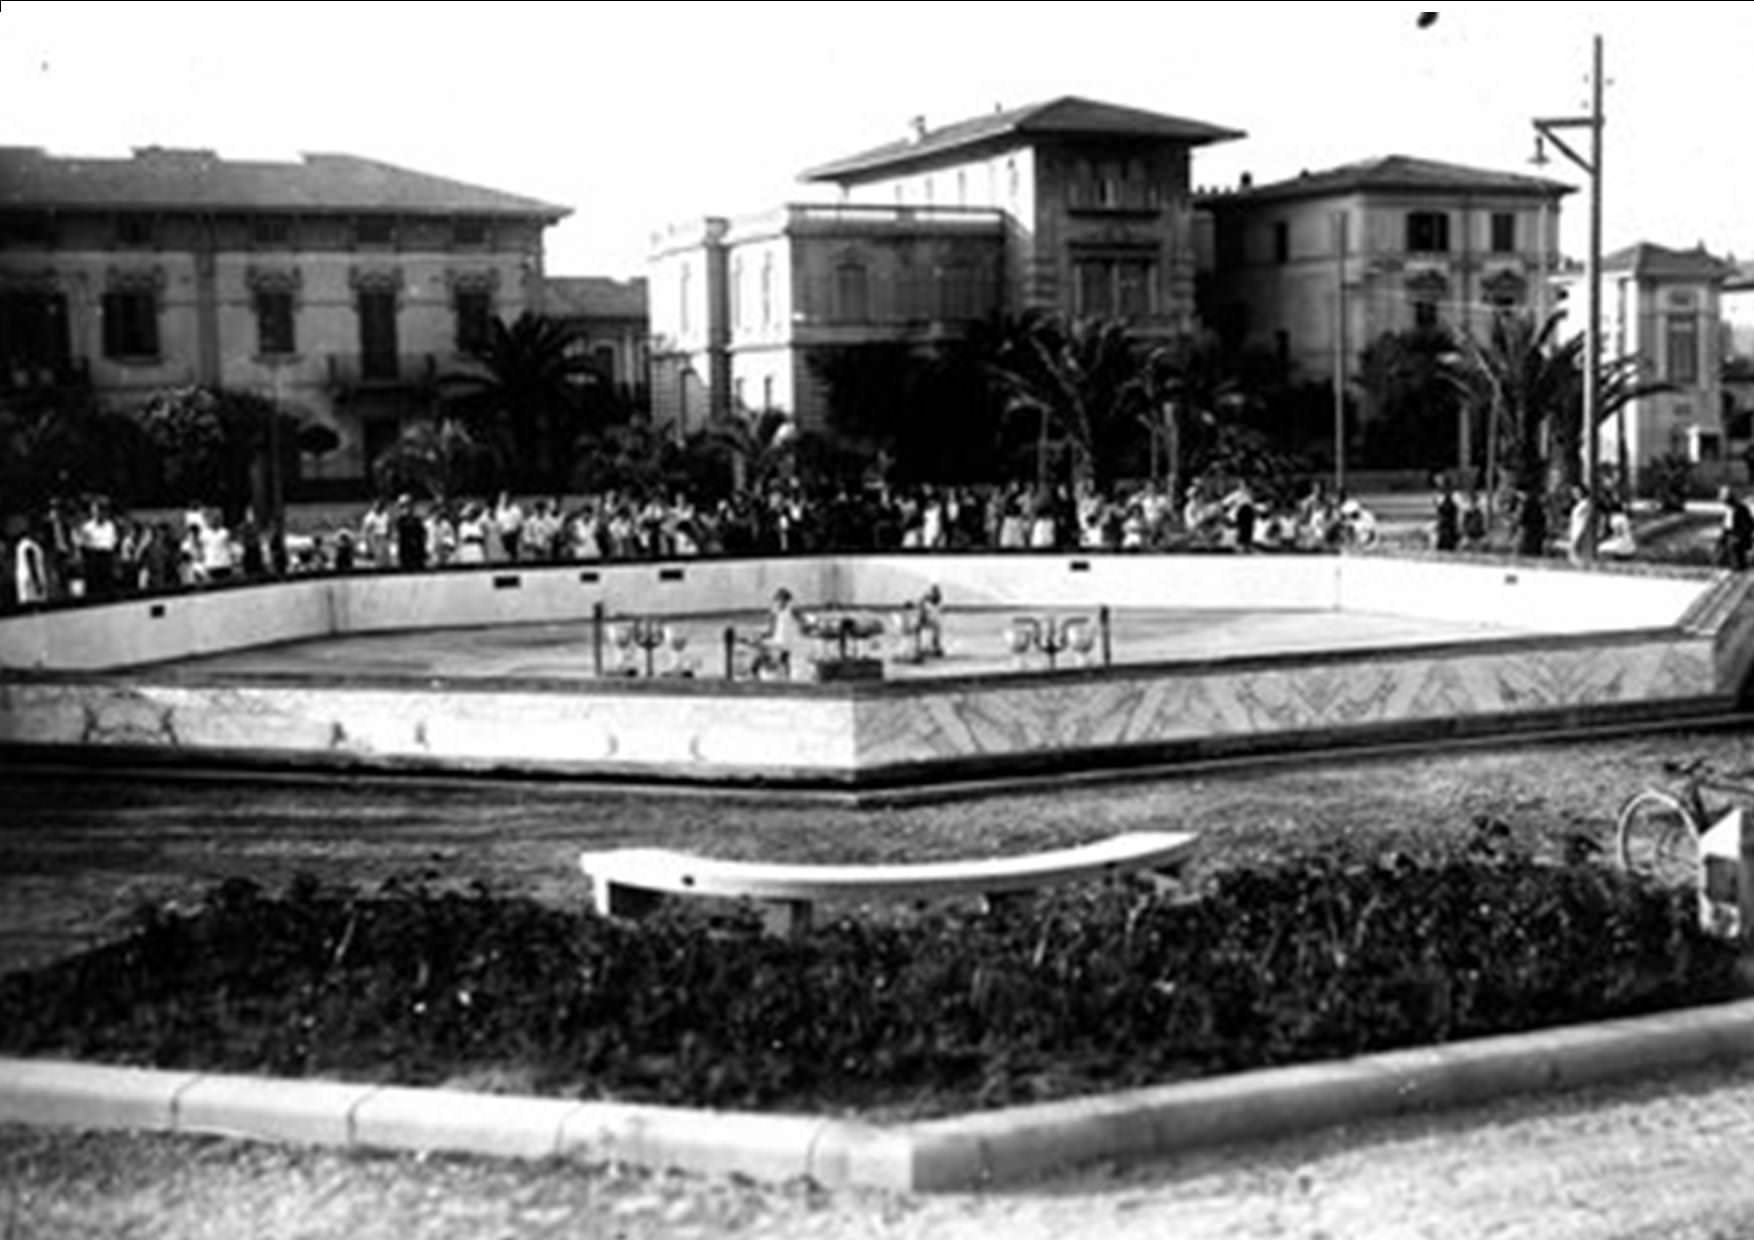 “Serve un nuovo progetto per la fontana di Piazza Mazzini”